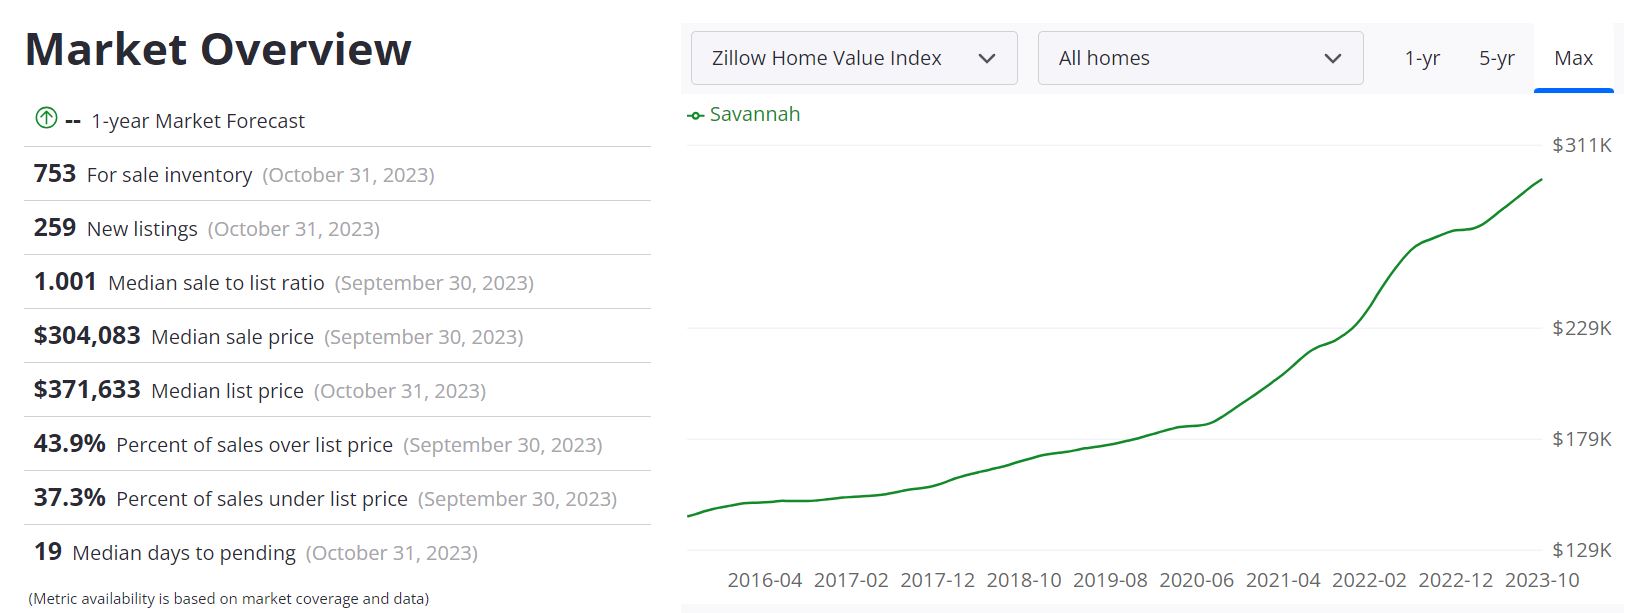 Savannah Housing Market Forecast 2023-2024 